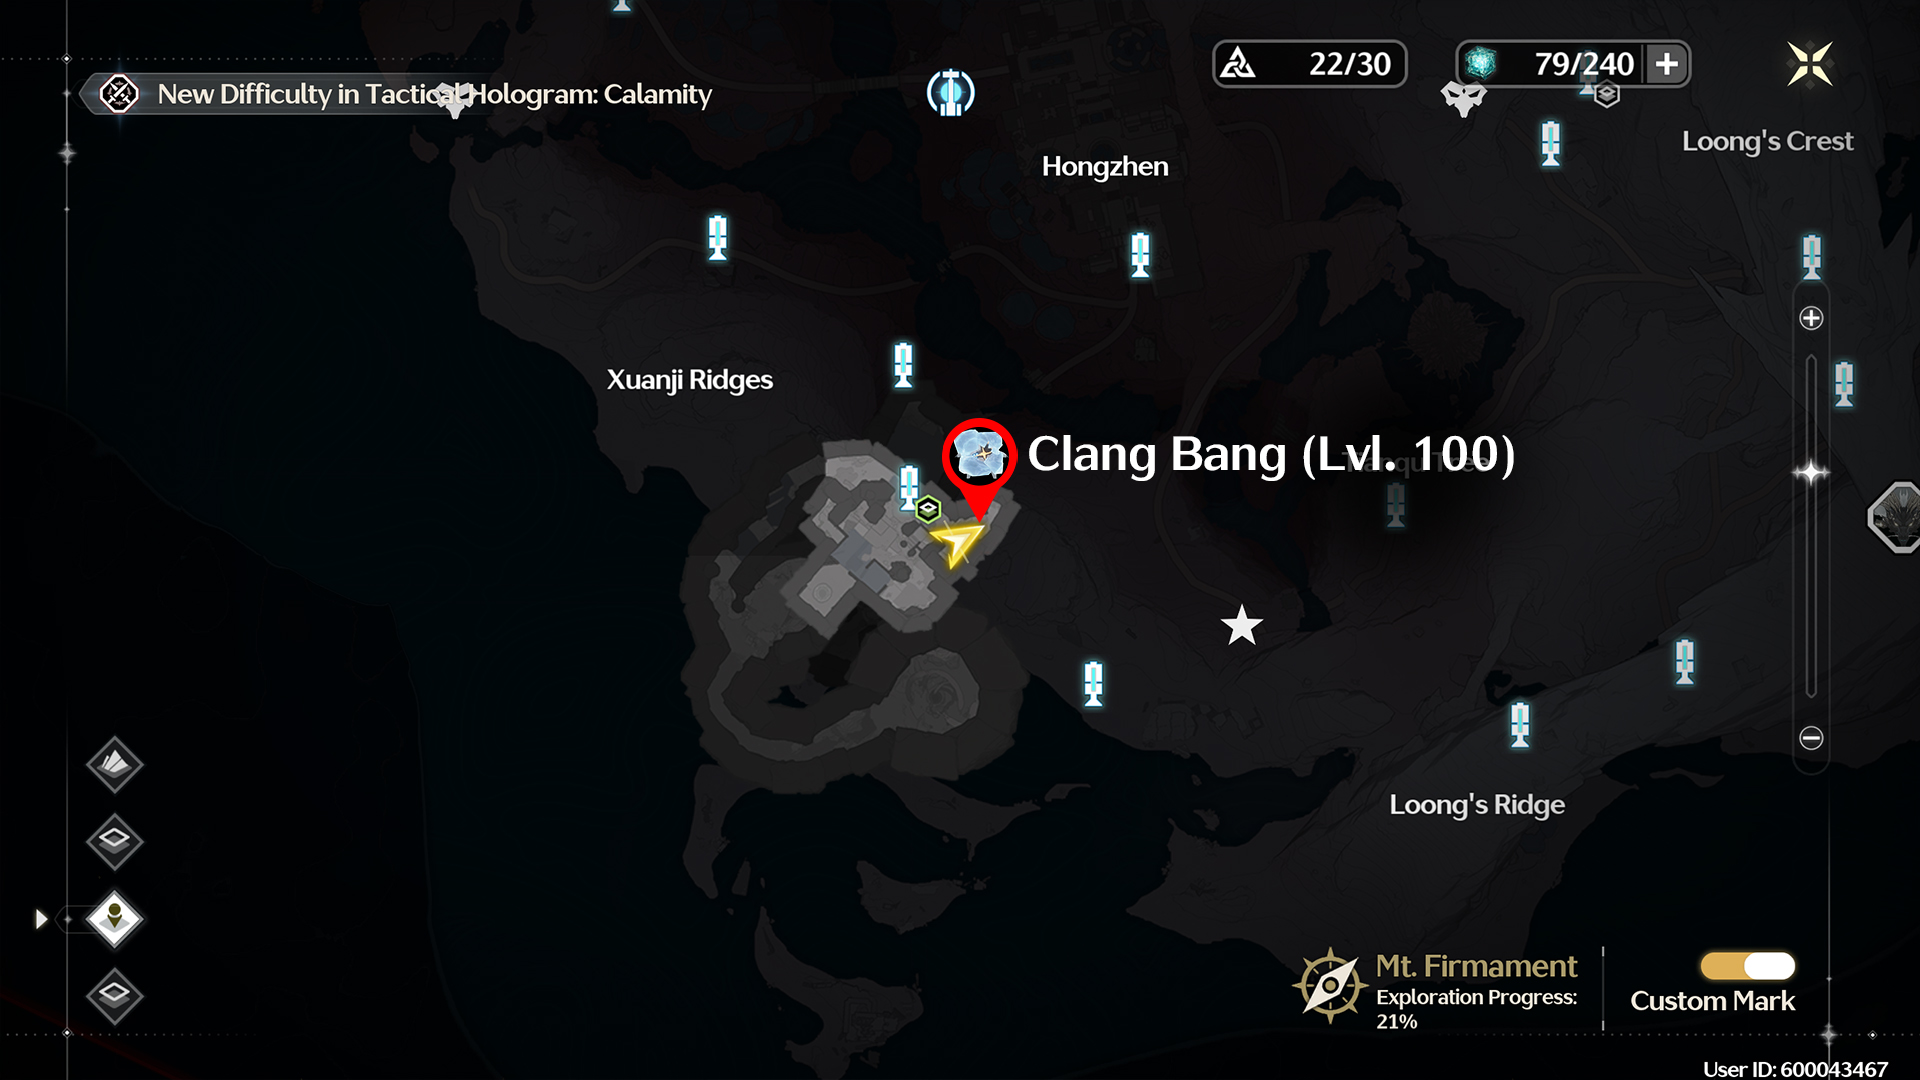 Location Clang Bang